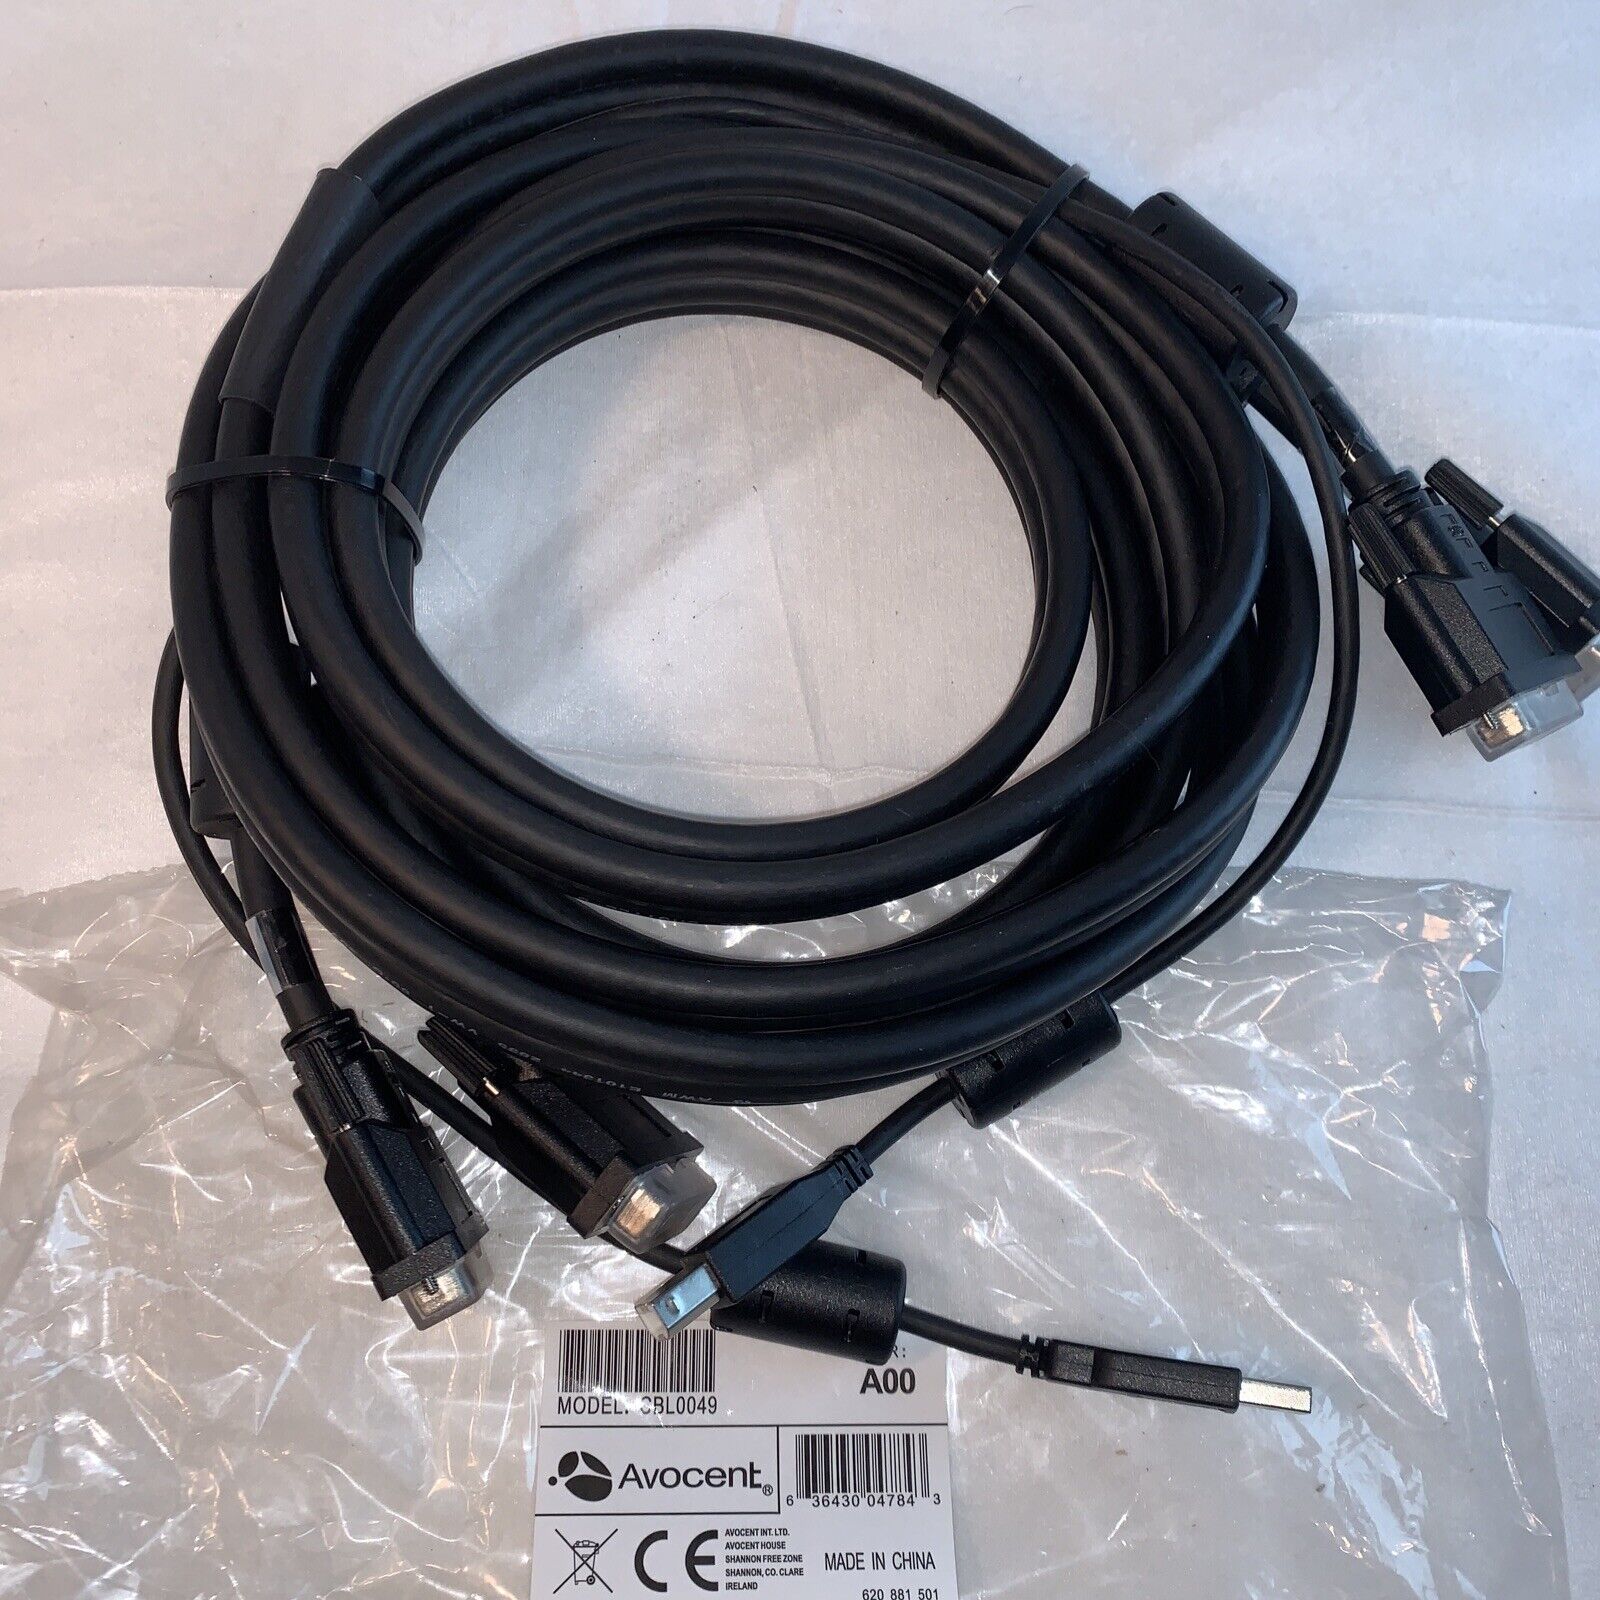 Avocent Cybex 12FT KVM Cable CBL0049 USB-B DVI-I Split Cable